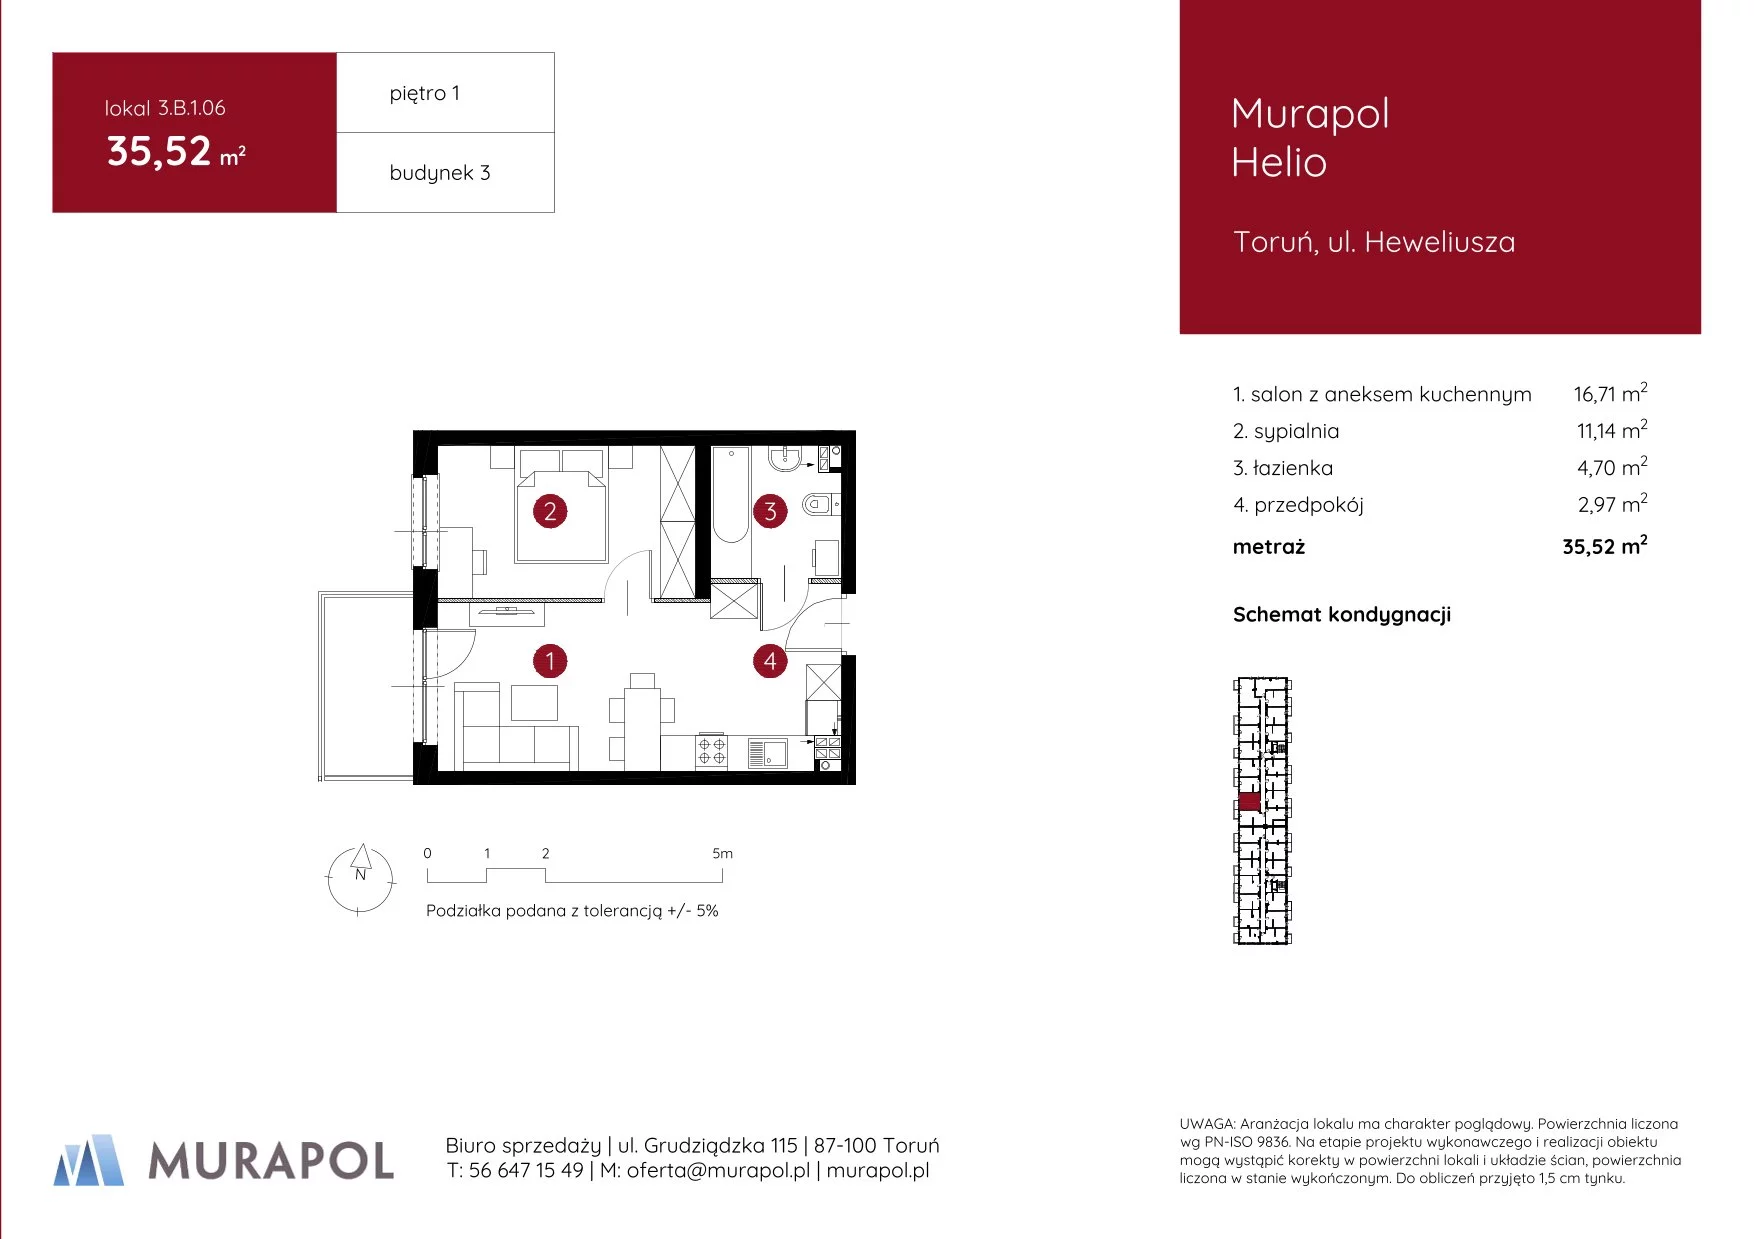 Mieszkanie 35,52 m², piętro 1, oferta nr 3.B.1.06, Murapol Helio, Toruń, Wrzosy, JAR, ul. Heweliusza